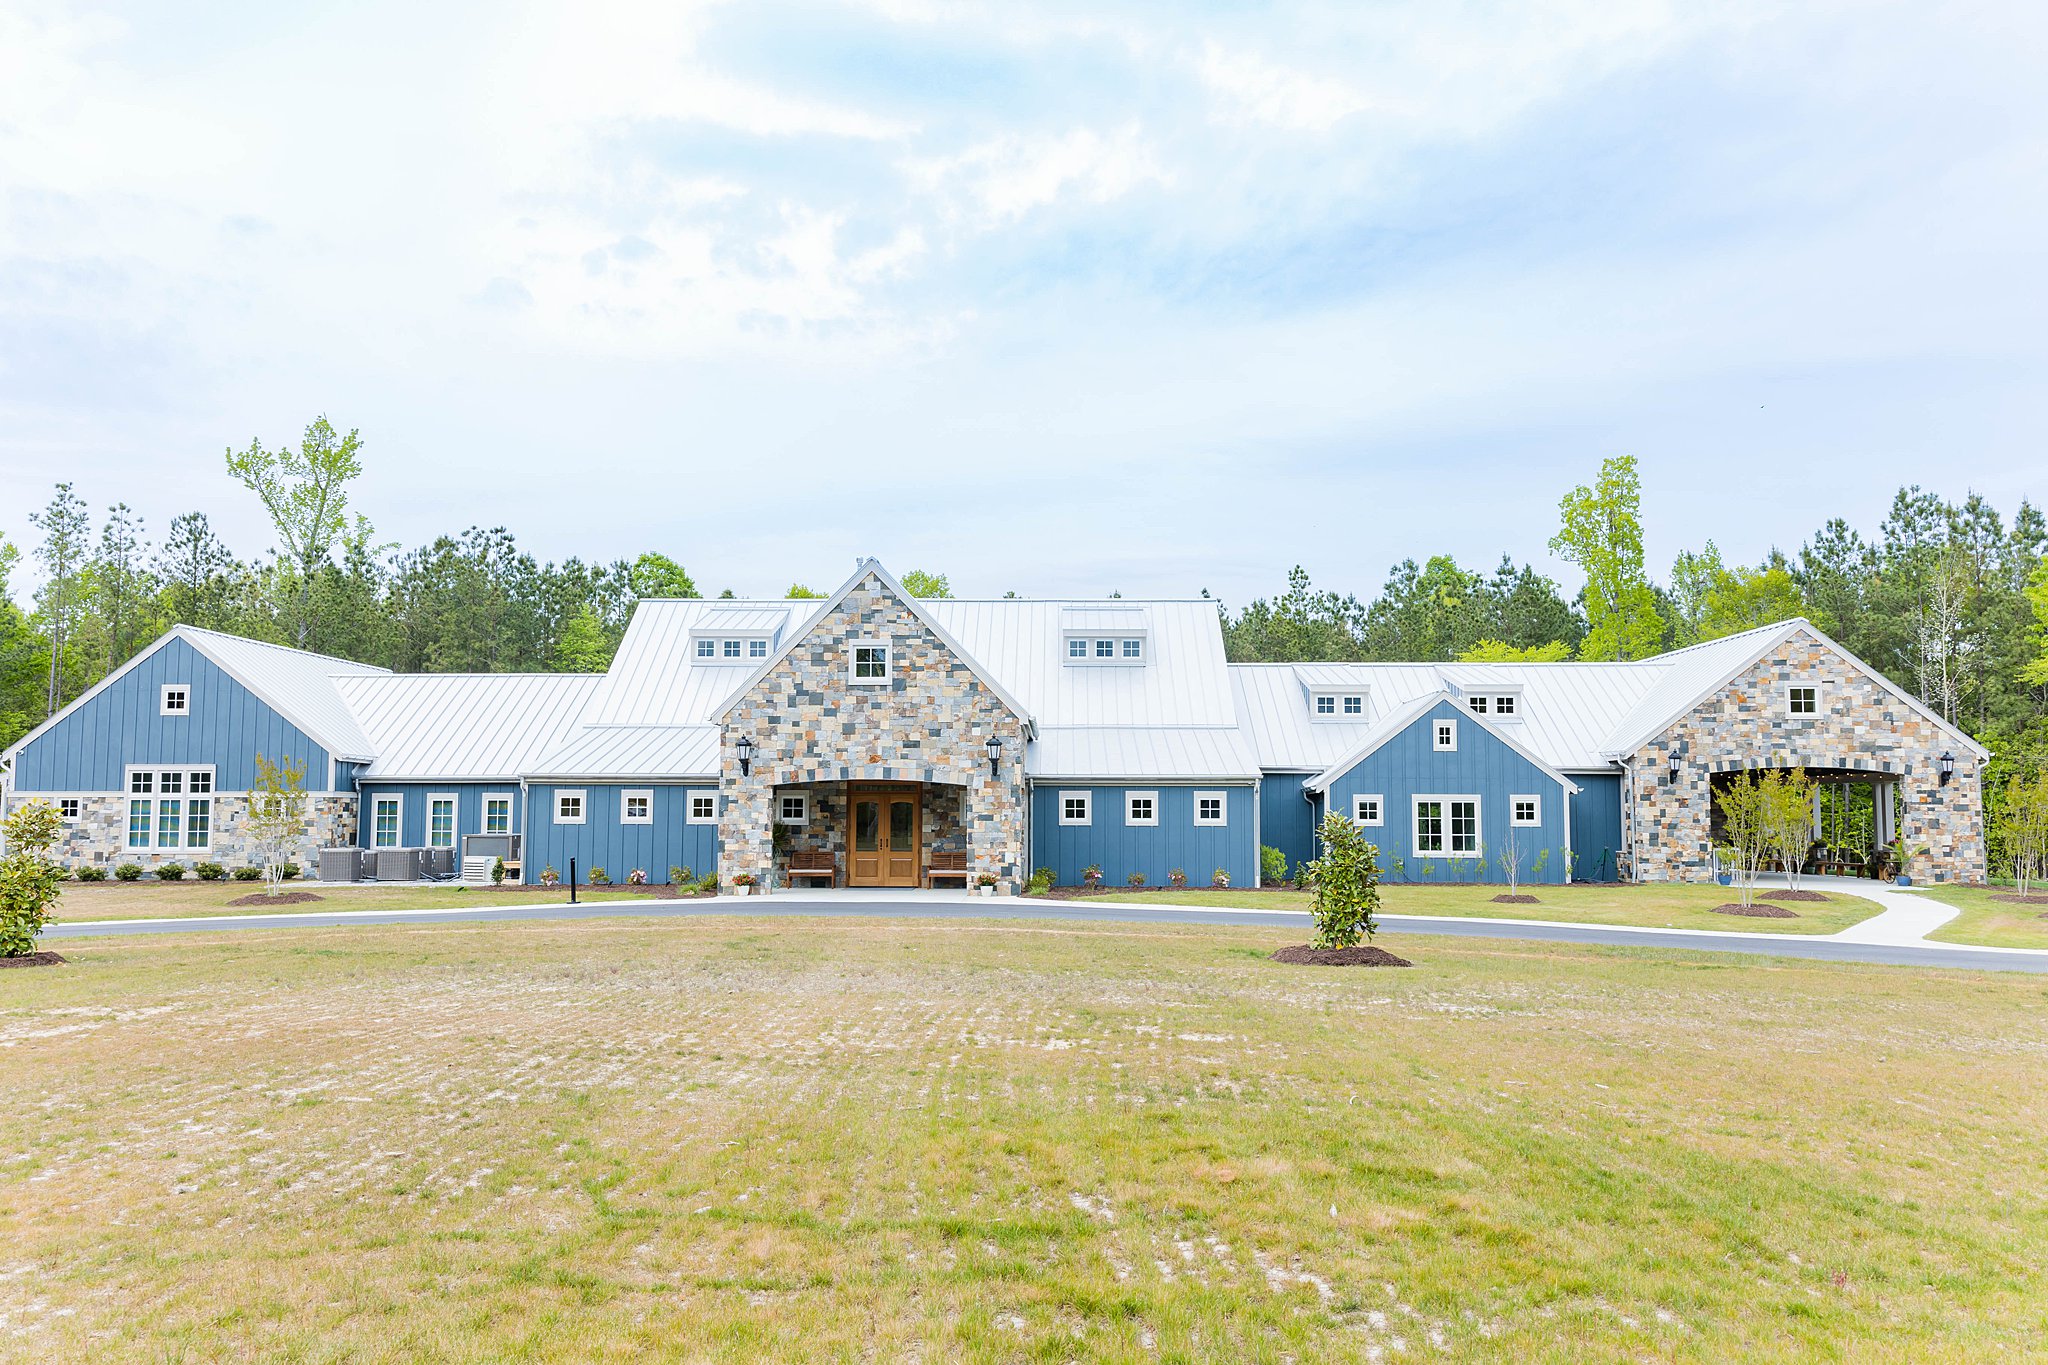 outdoor image of the Maine Wedding venue in Williamsburg, VA